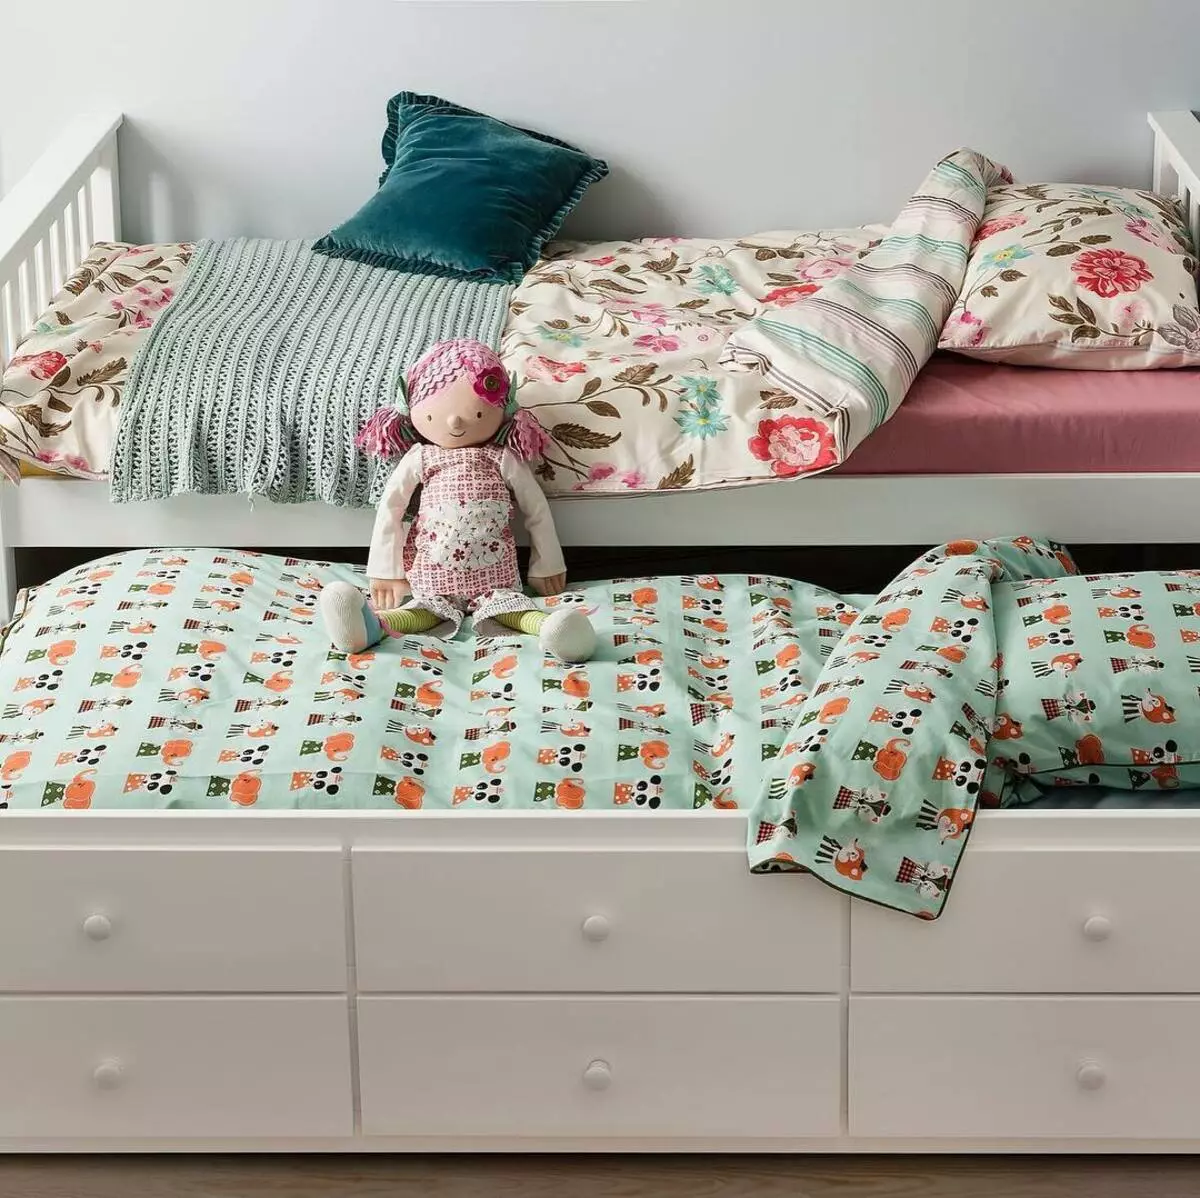 Retractable Children's Beds